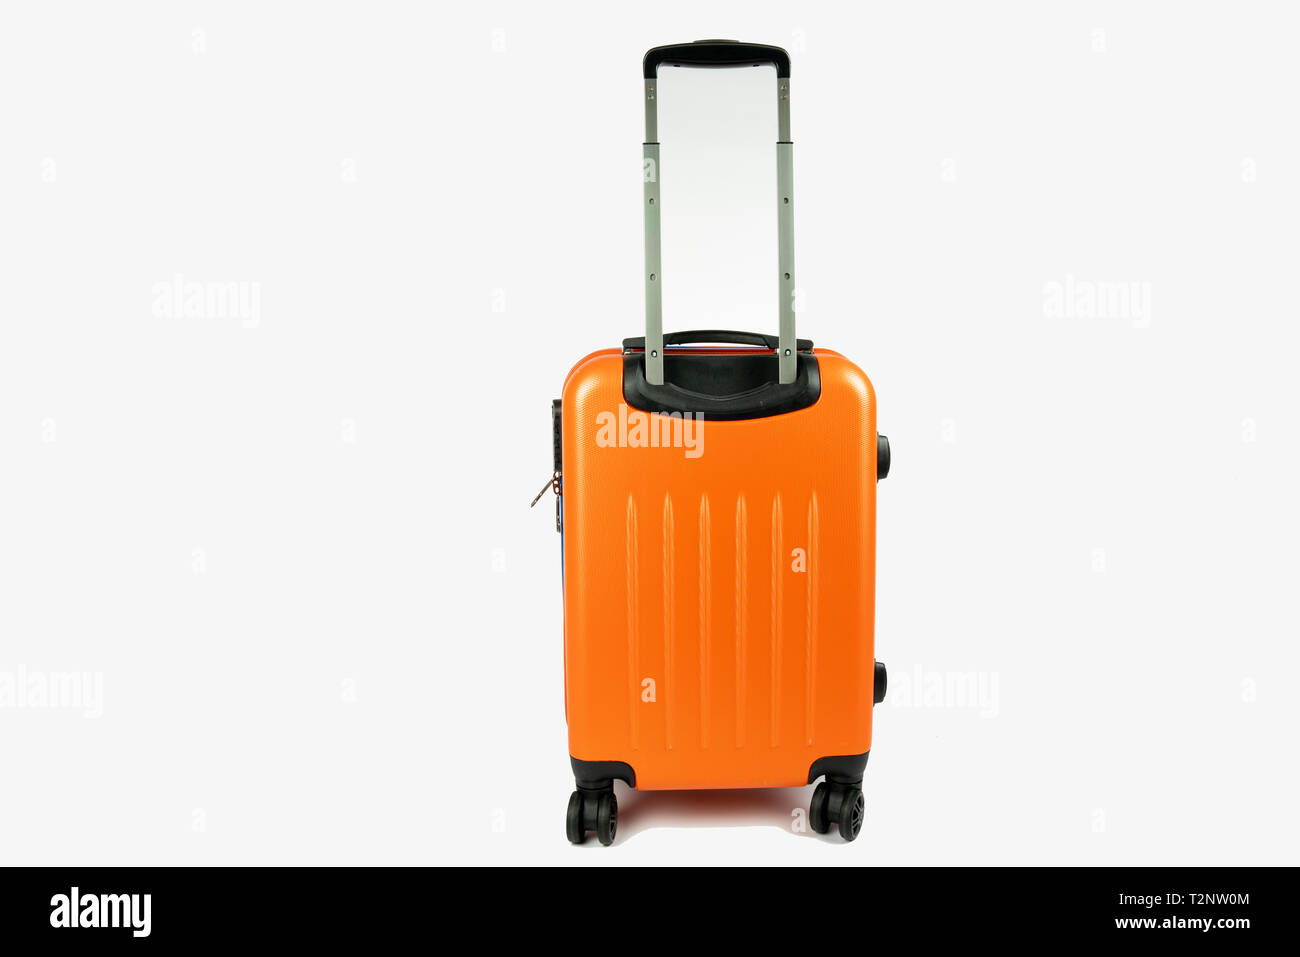 Orange avec la valise moderne la poignée vers le haut. Prêt à aller pour vos vacances ou voyage d'affaires. La valise est sur fond blanc avec l'espace à côté de lui Banque D'Images